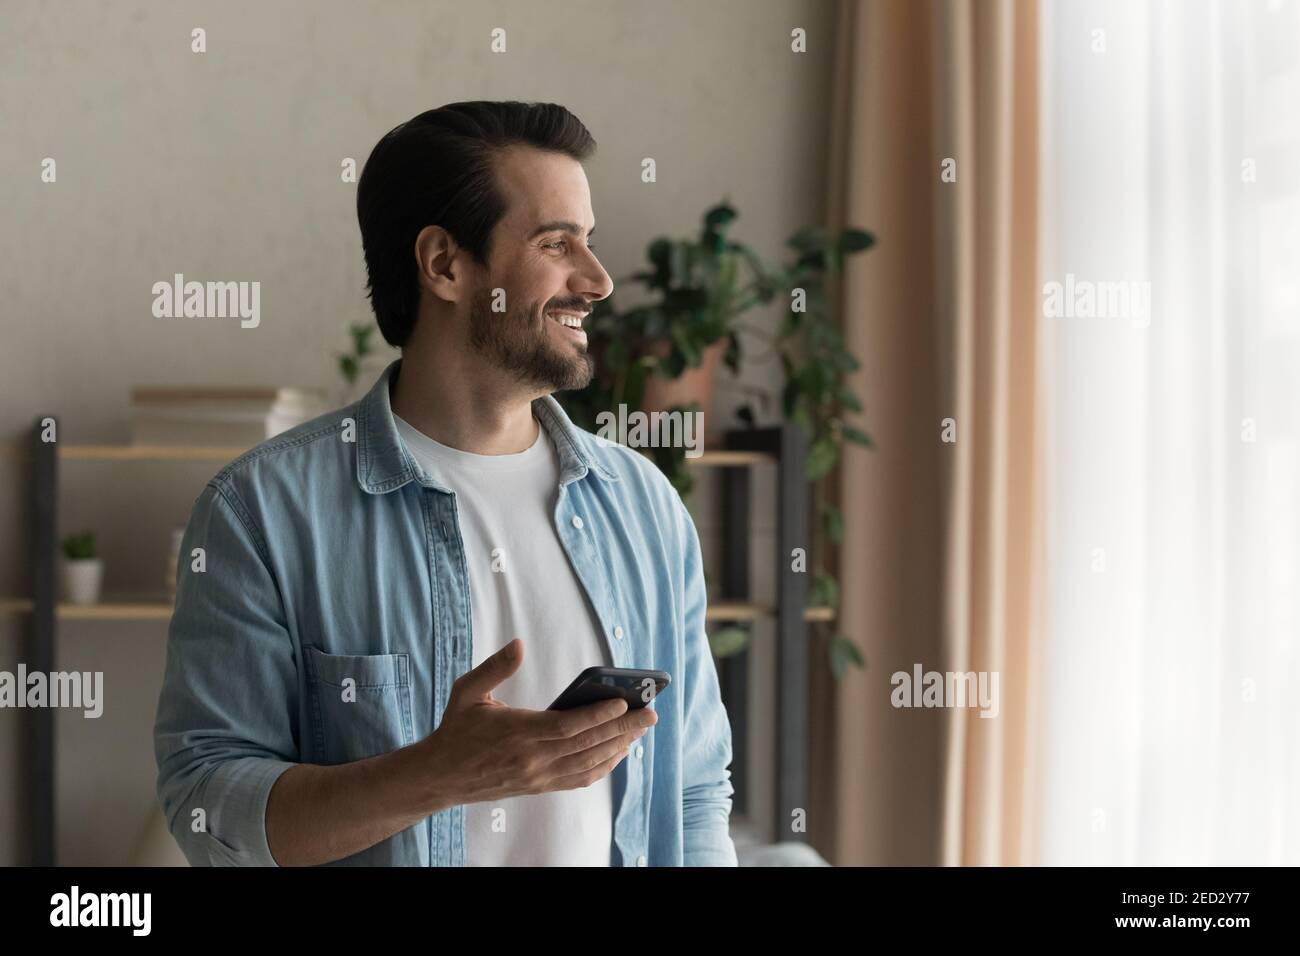 Un homme heureux, debout près de la fenêtre, ne regarde pas distrait du smartphone Banque D'Images